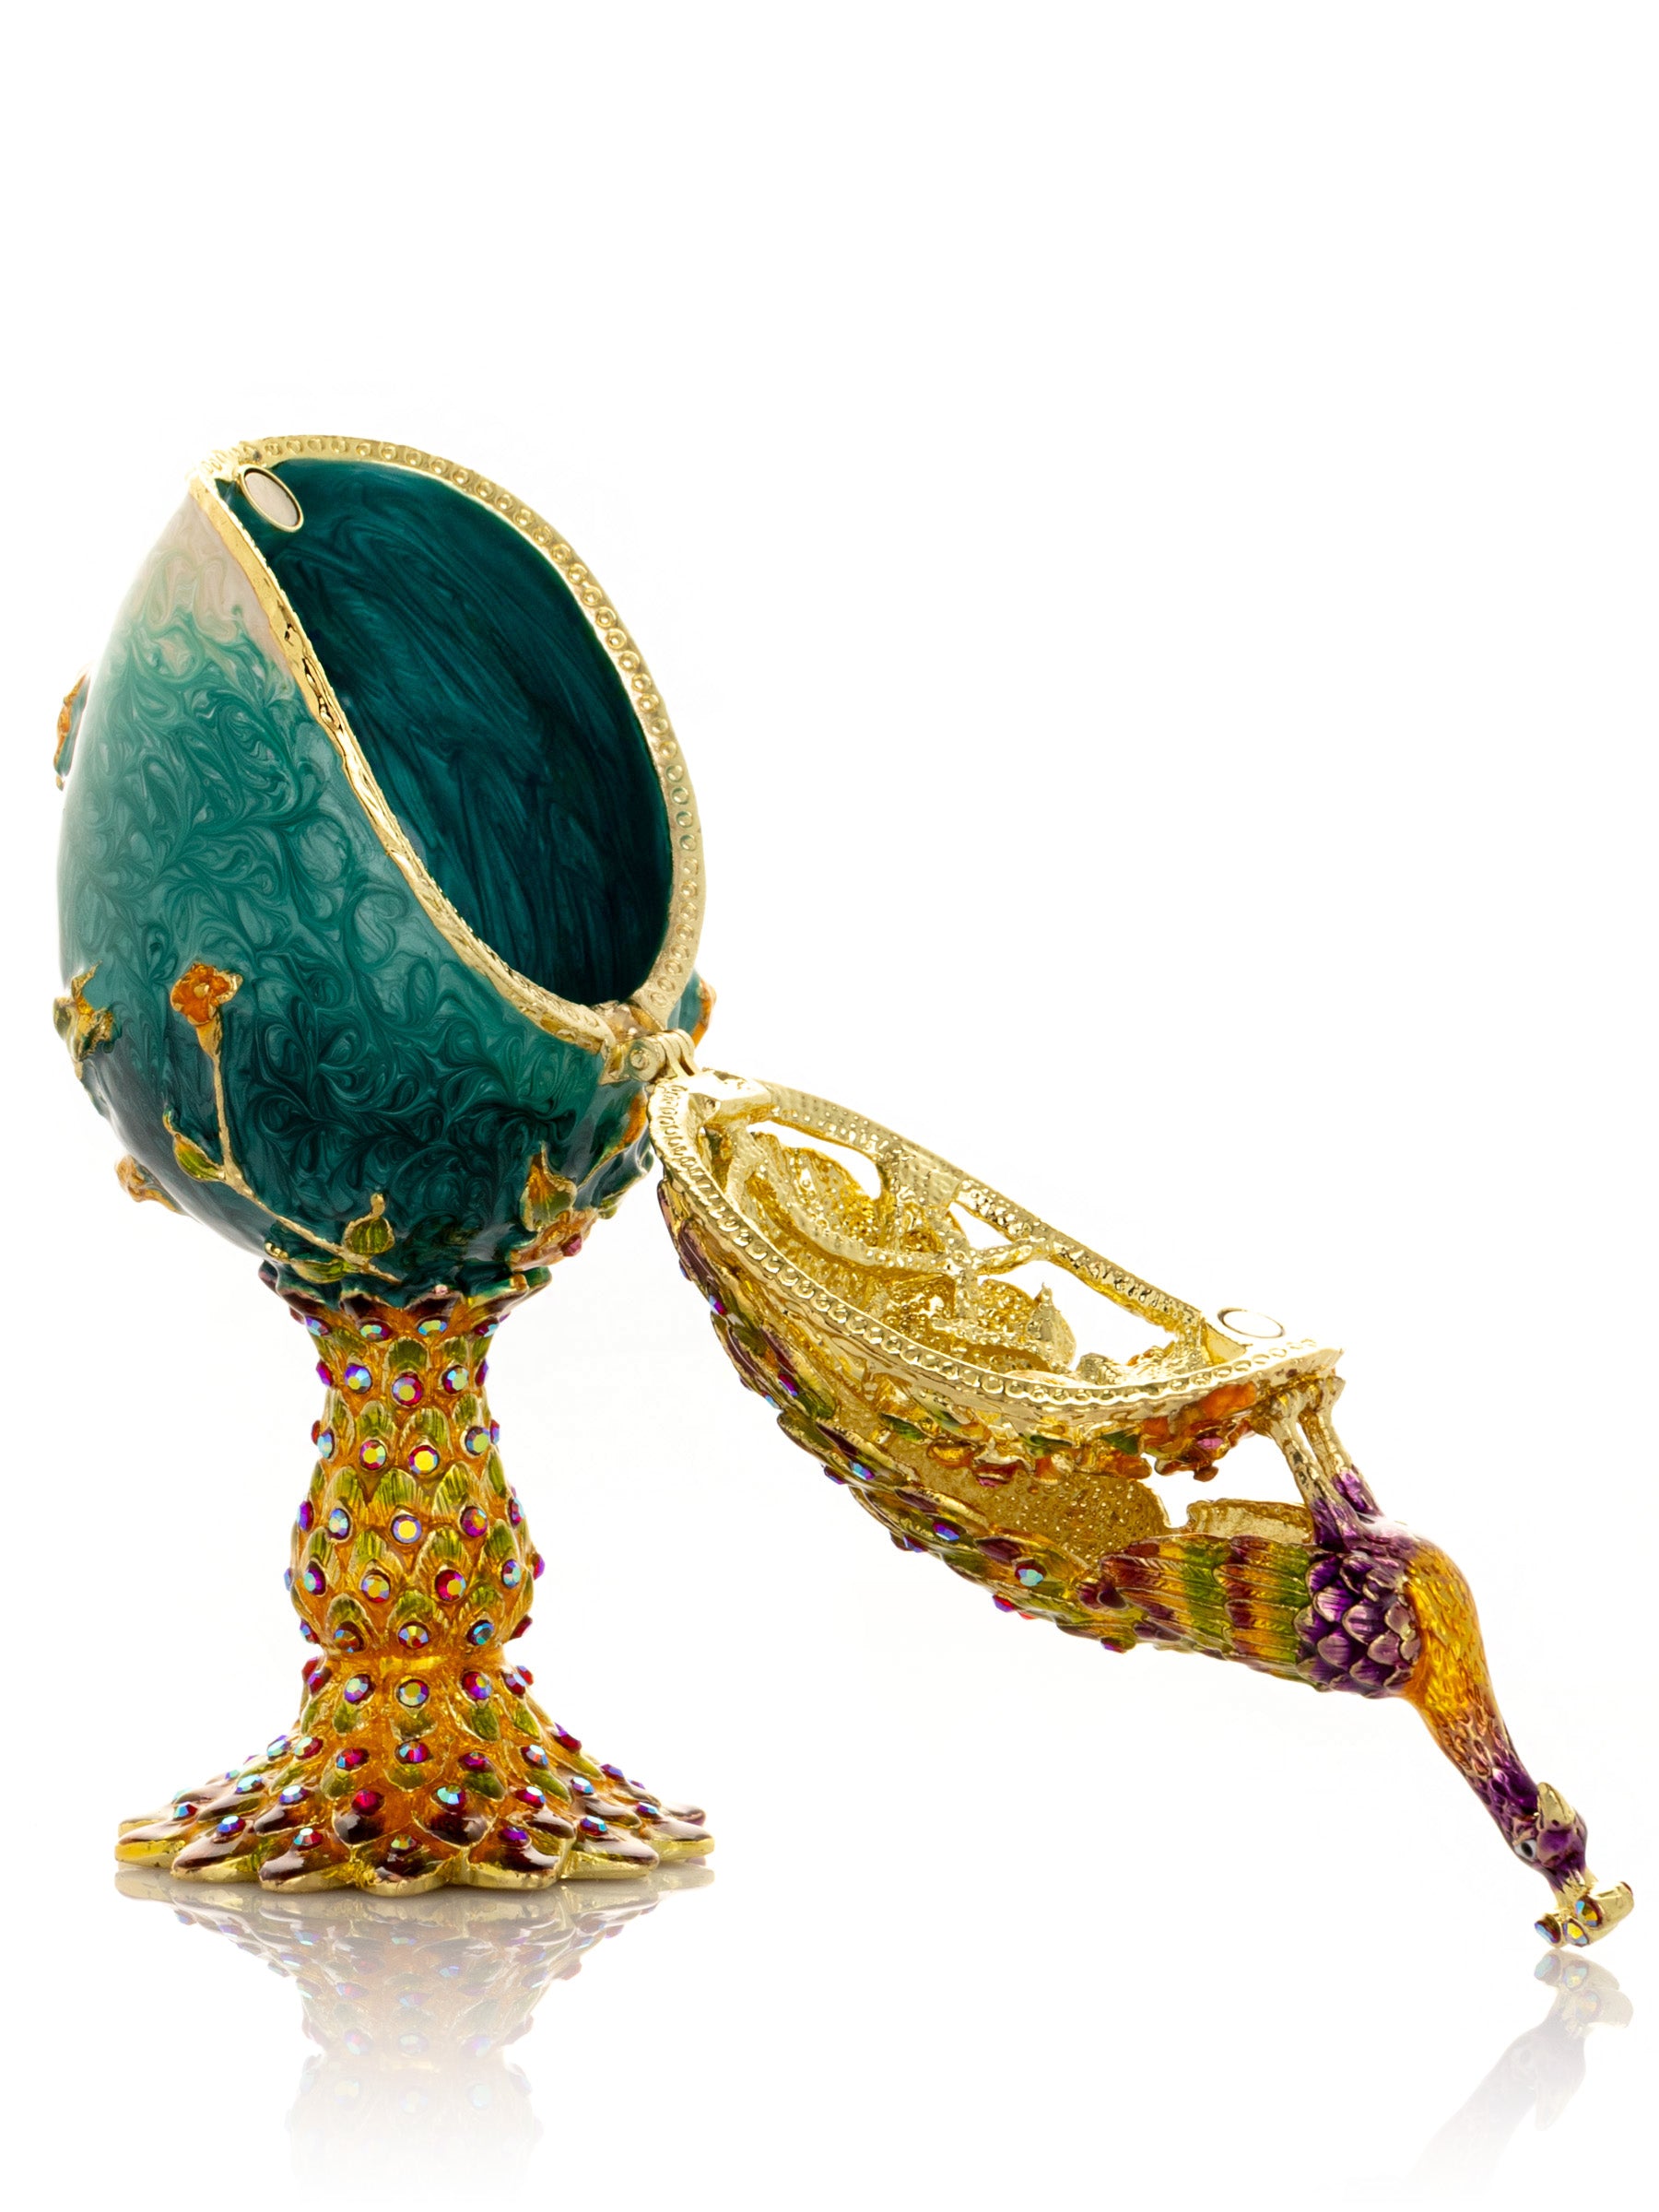 Pfau auf einem Fabergé-Ei